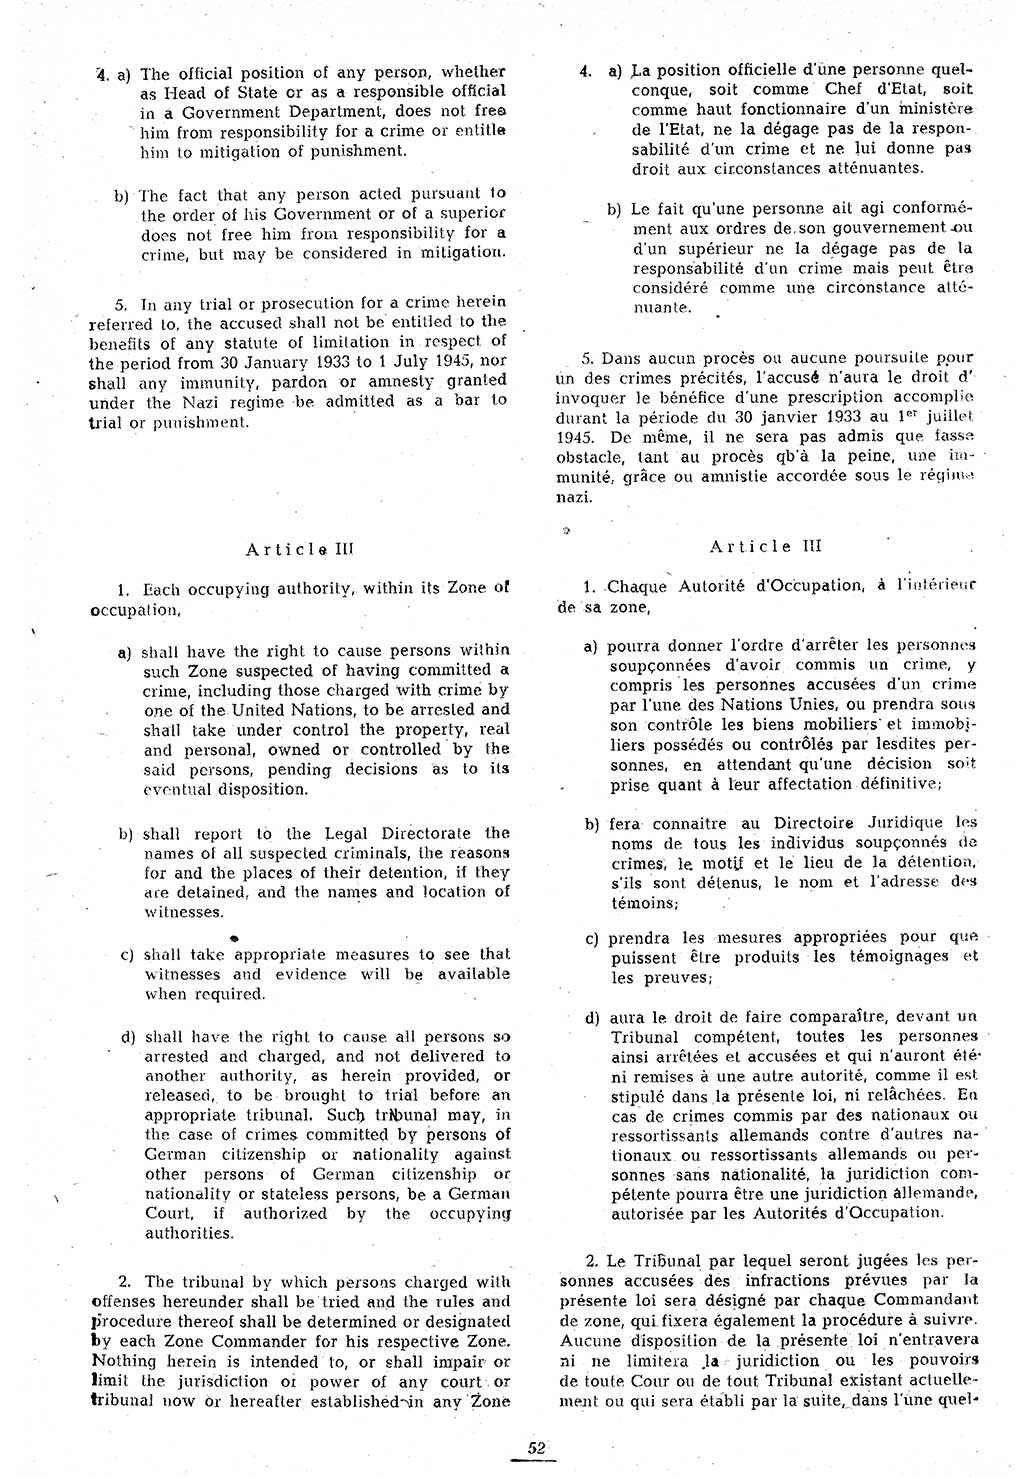 Amtsblatt des Kontrollrats (ABlKR) in Deutschland 1946, Seite 52/1 (ABlKR Dtl. 1946, S. 52/1)